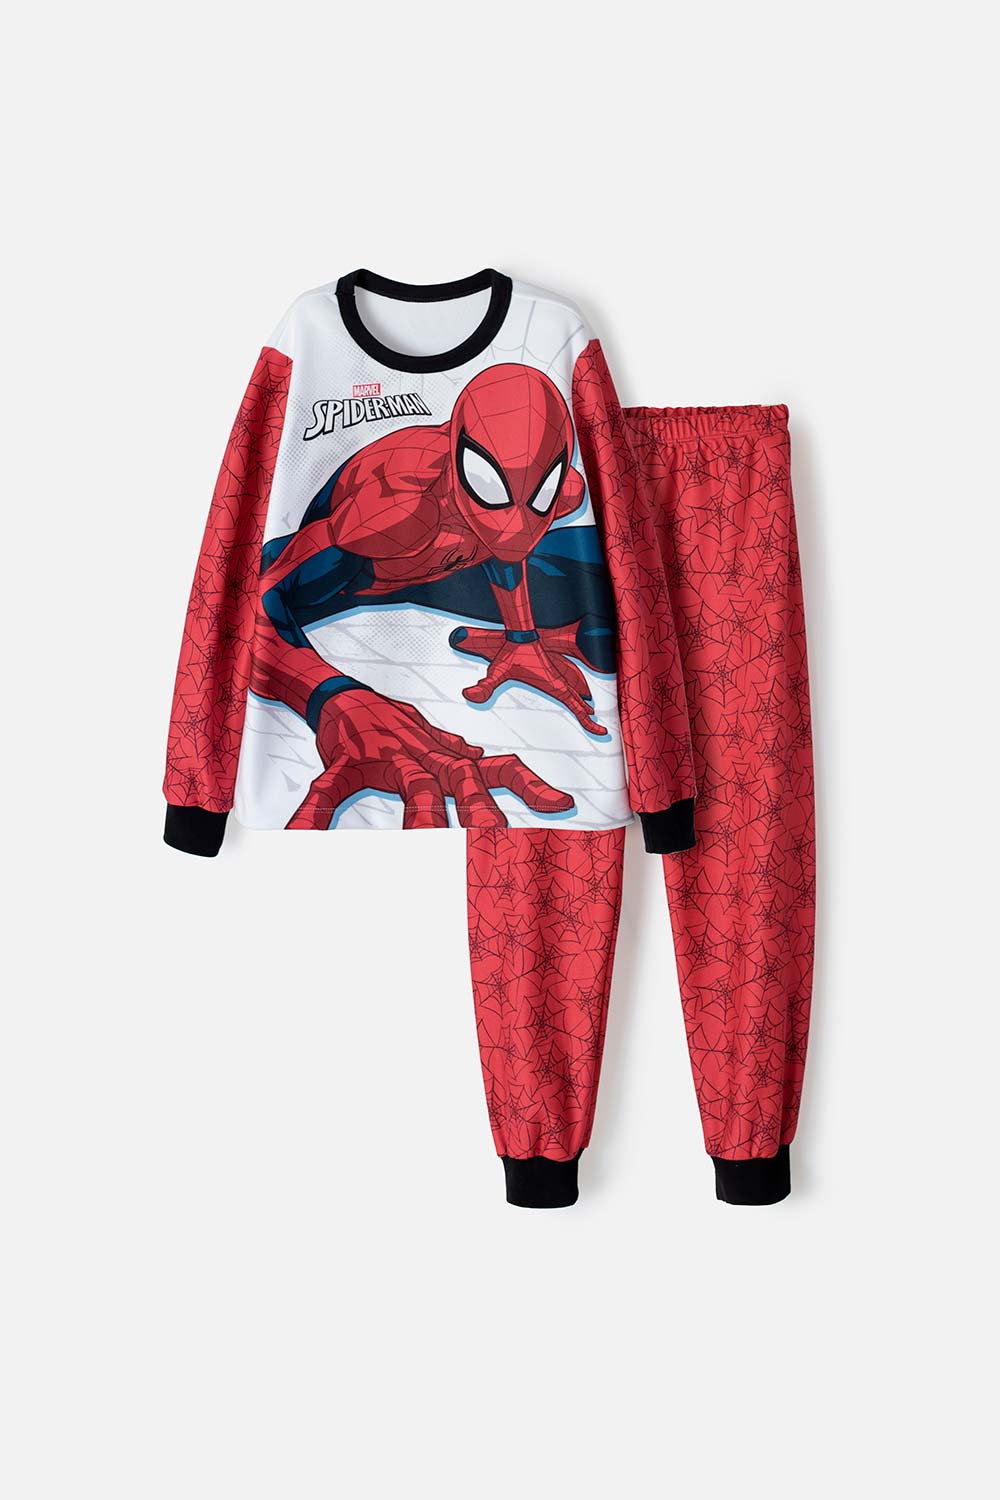 Marvel Spider-Man - Pijama de manga larga para niño, talla M 8, múltiple